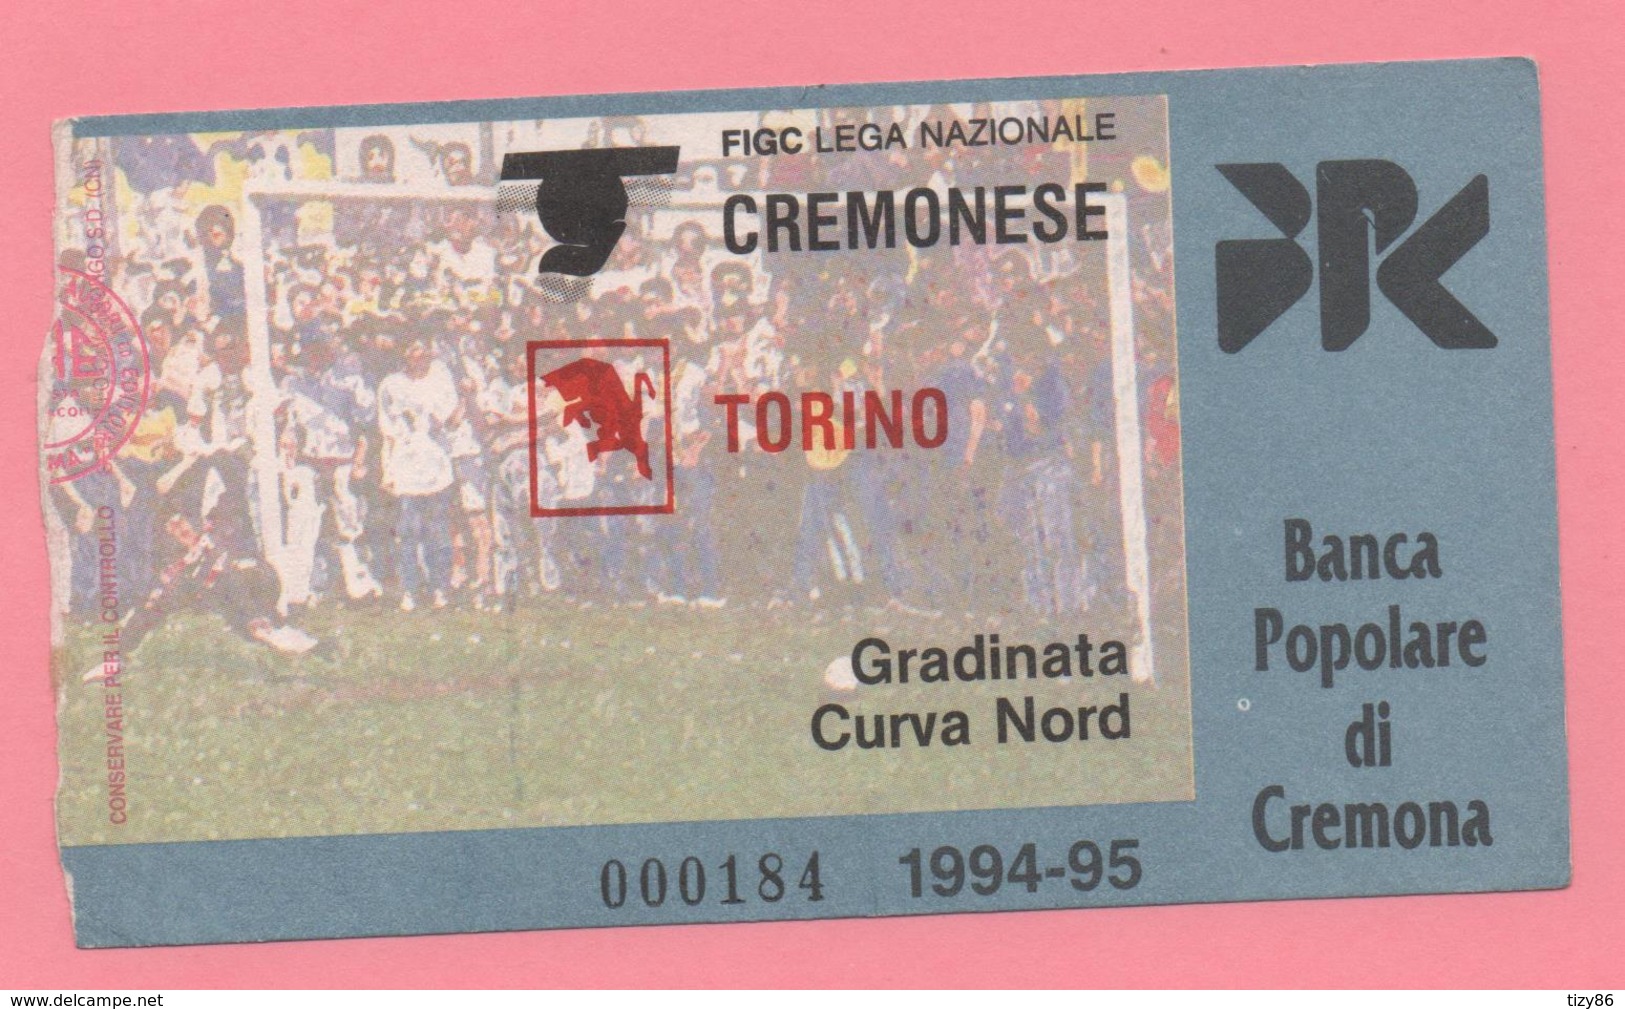 Biglietto D'ingresso Stadio Cremonese Torino 1994/95 - Biglietti D'ingresso